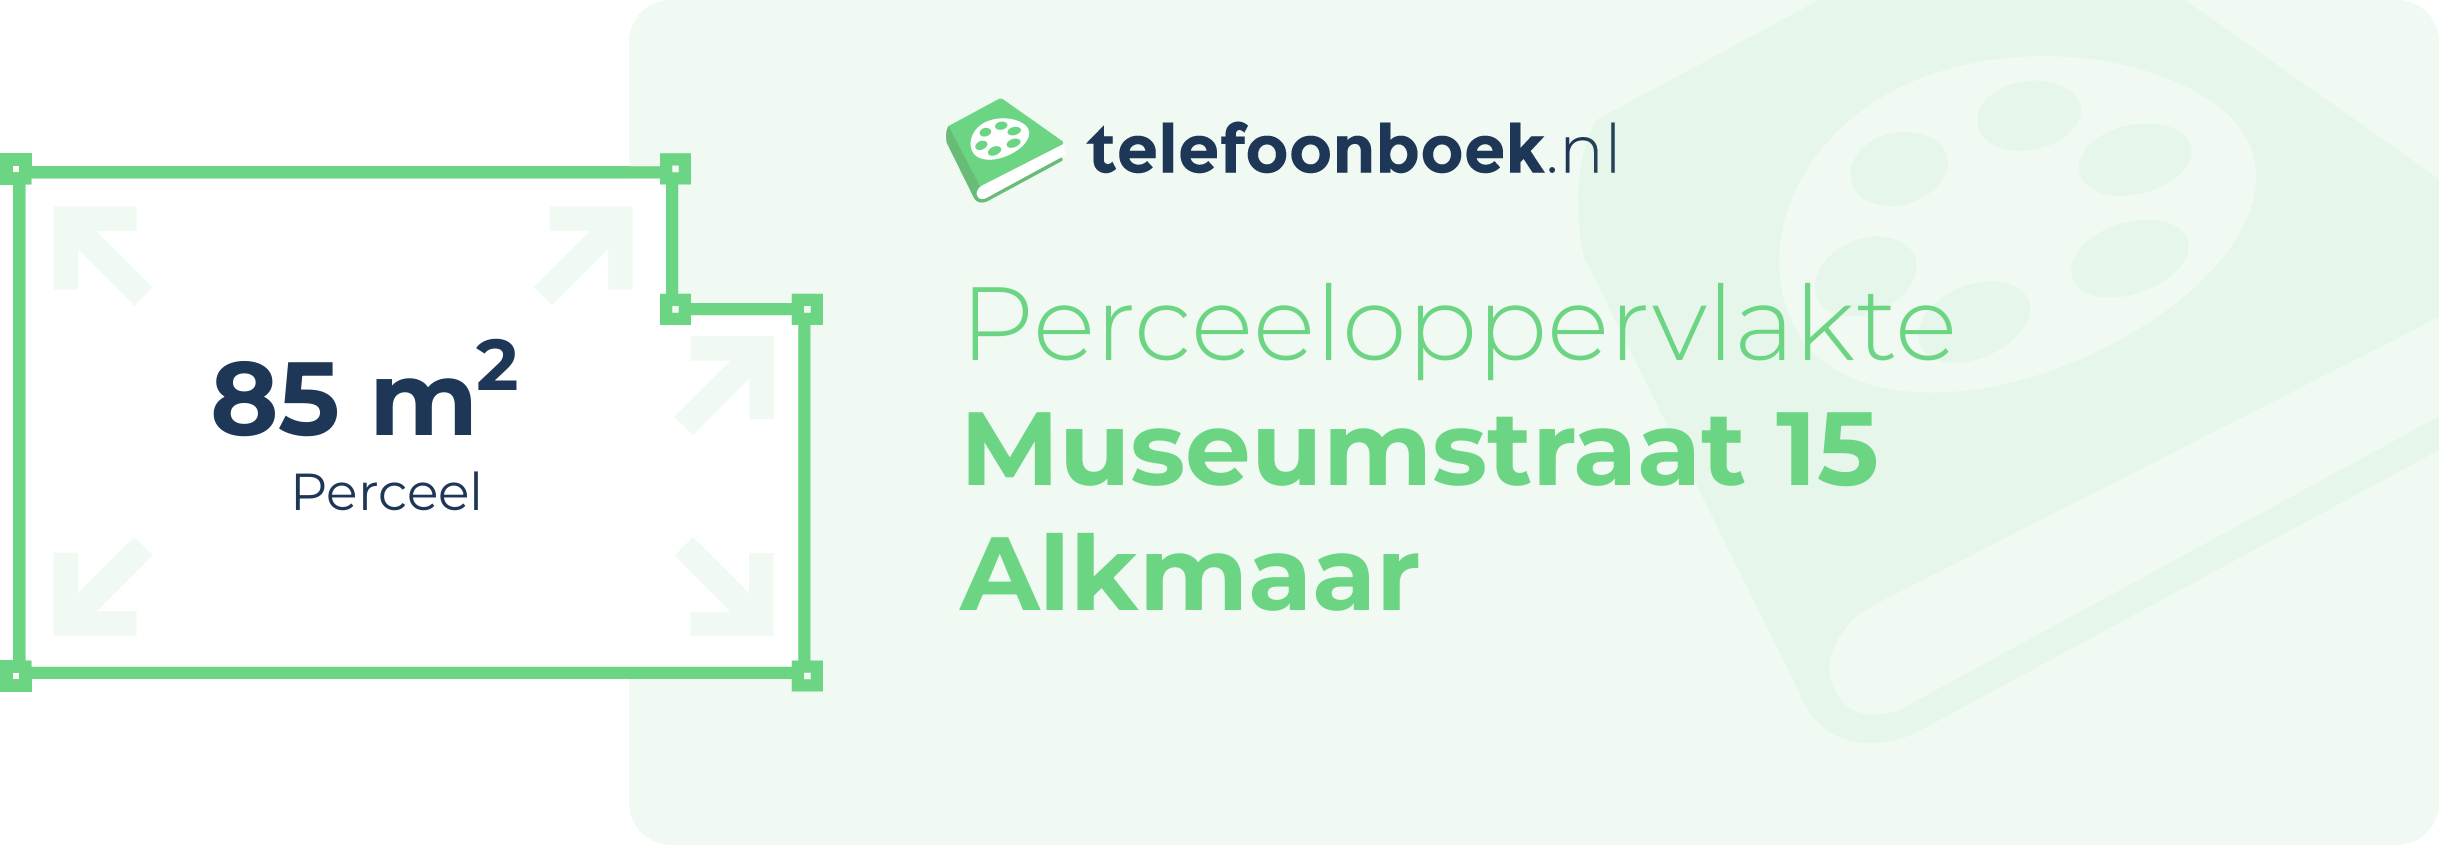 Perceeloppervlakte Museumstraat 15 Alkmaar